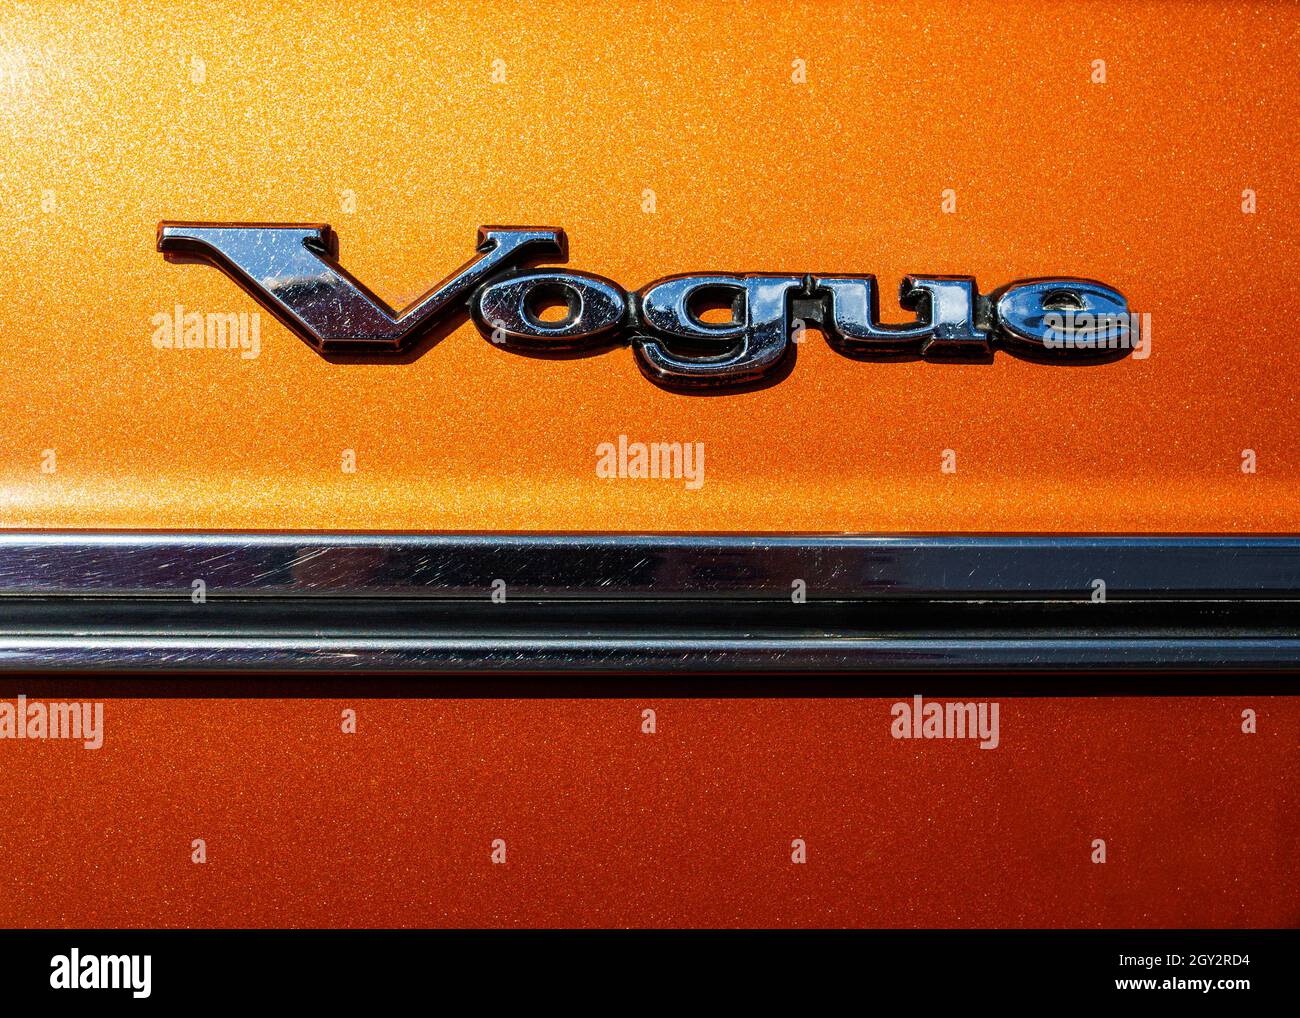 Image de l'écusson chromé sur la porte latérale d'une voiture Sunbeam Vogue des années 1970, le mot Vogue au-dessus d'une bande de porte chromée sur une peinture orange métallique Banque D'Images